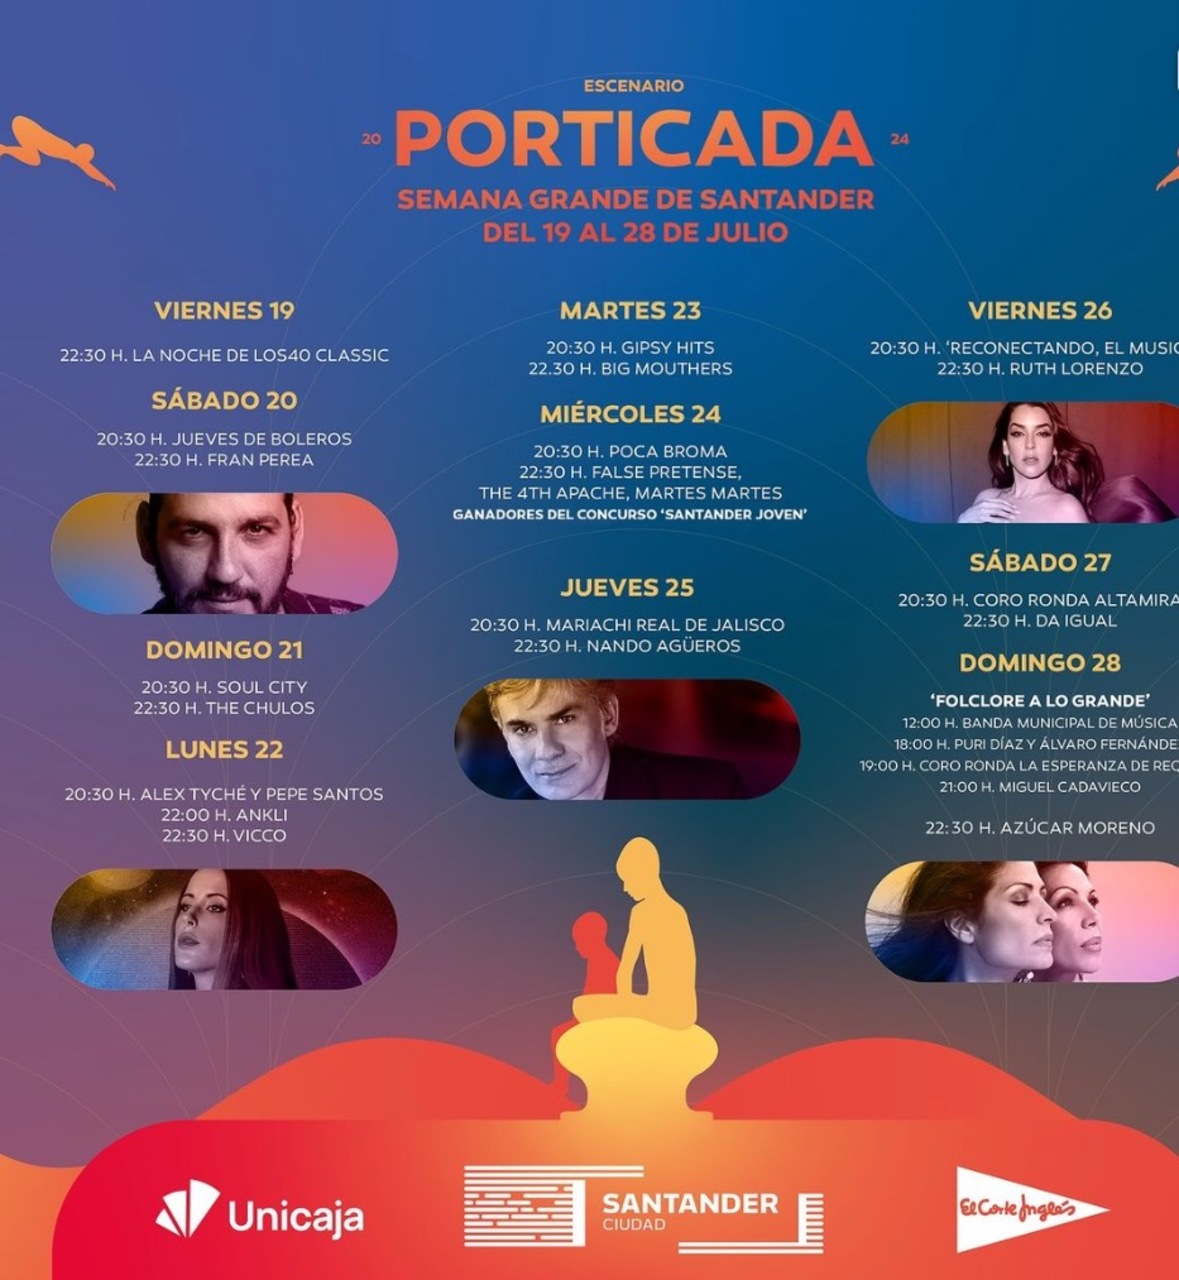 Escenario Porticada: "Reconectando, el musical" y concierto de Ruth Lorenzo